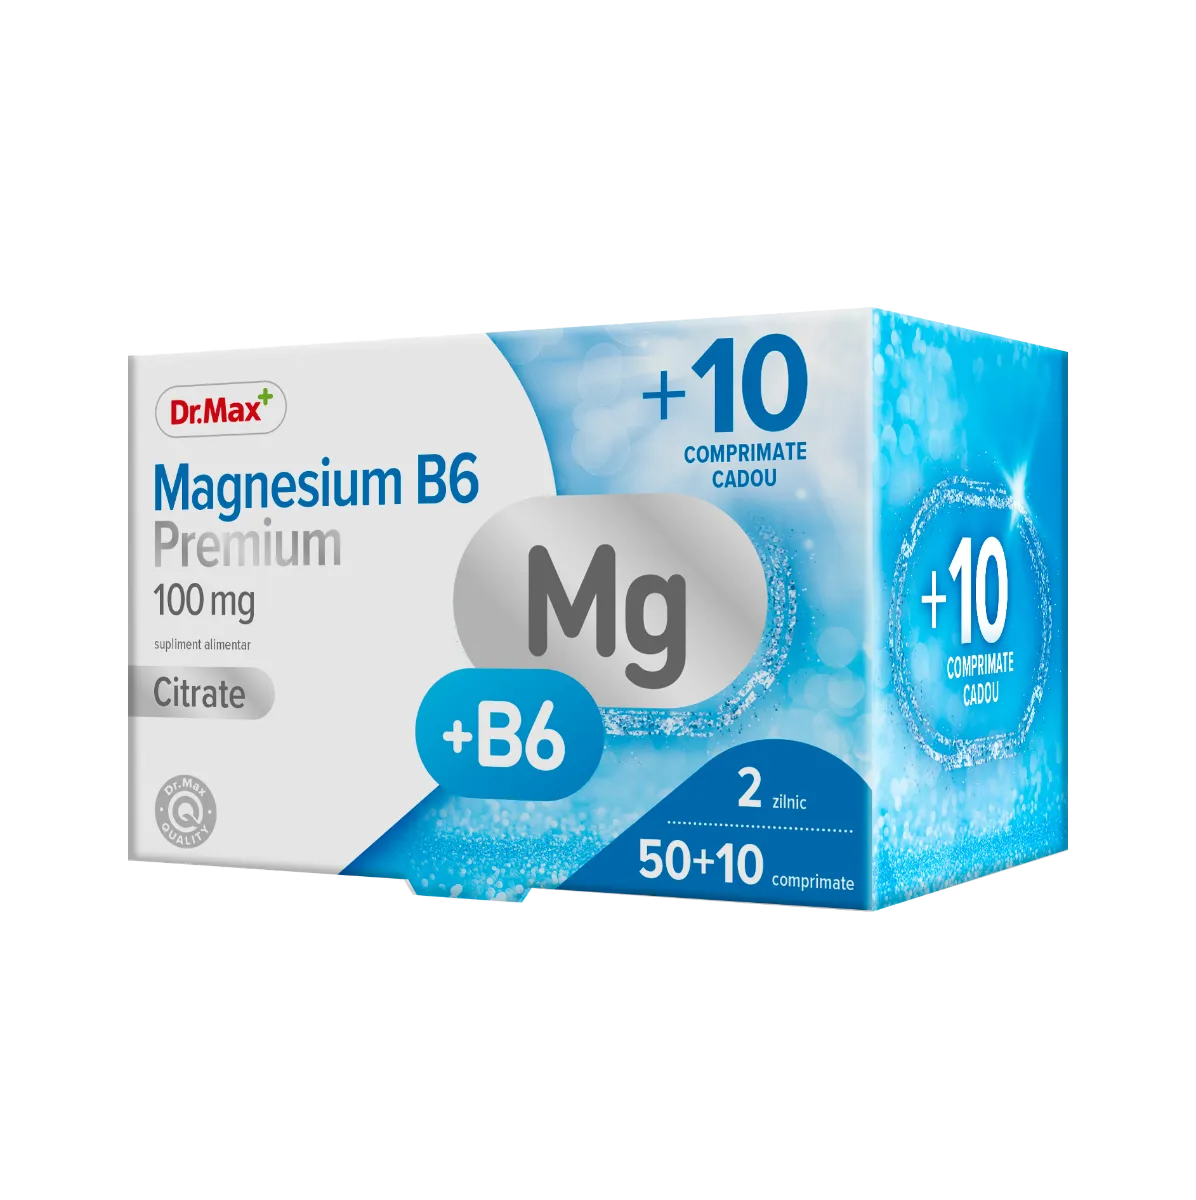 Dr.Max Magnesium B6 Premium, 50+10 comprimate